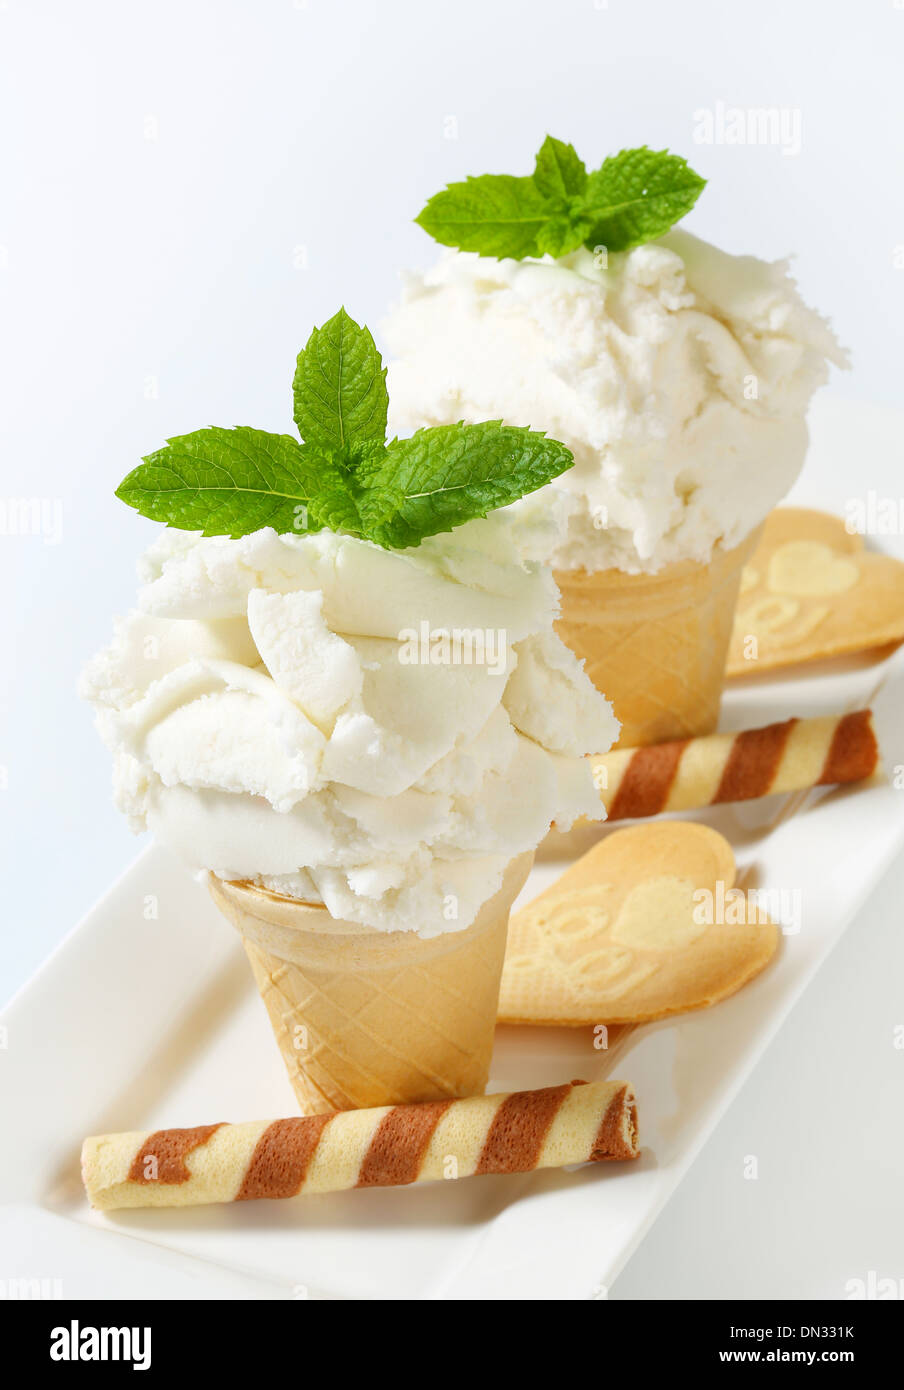 Frozen yogurt in wafer cups Stock Photo